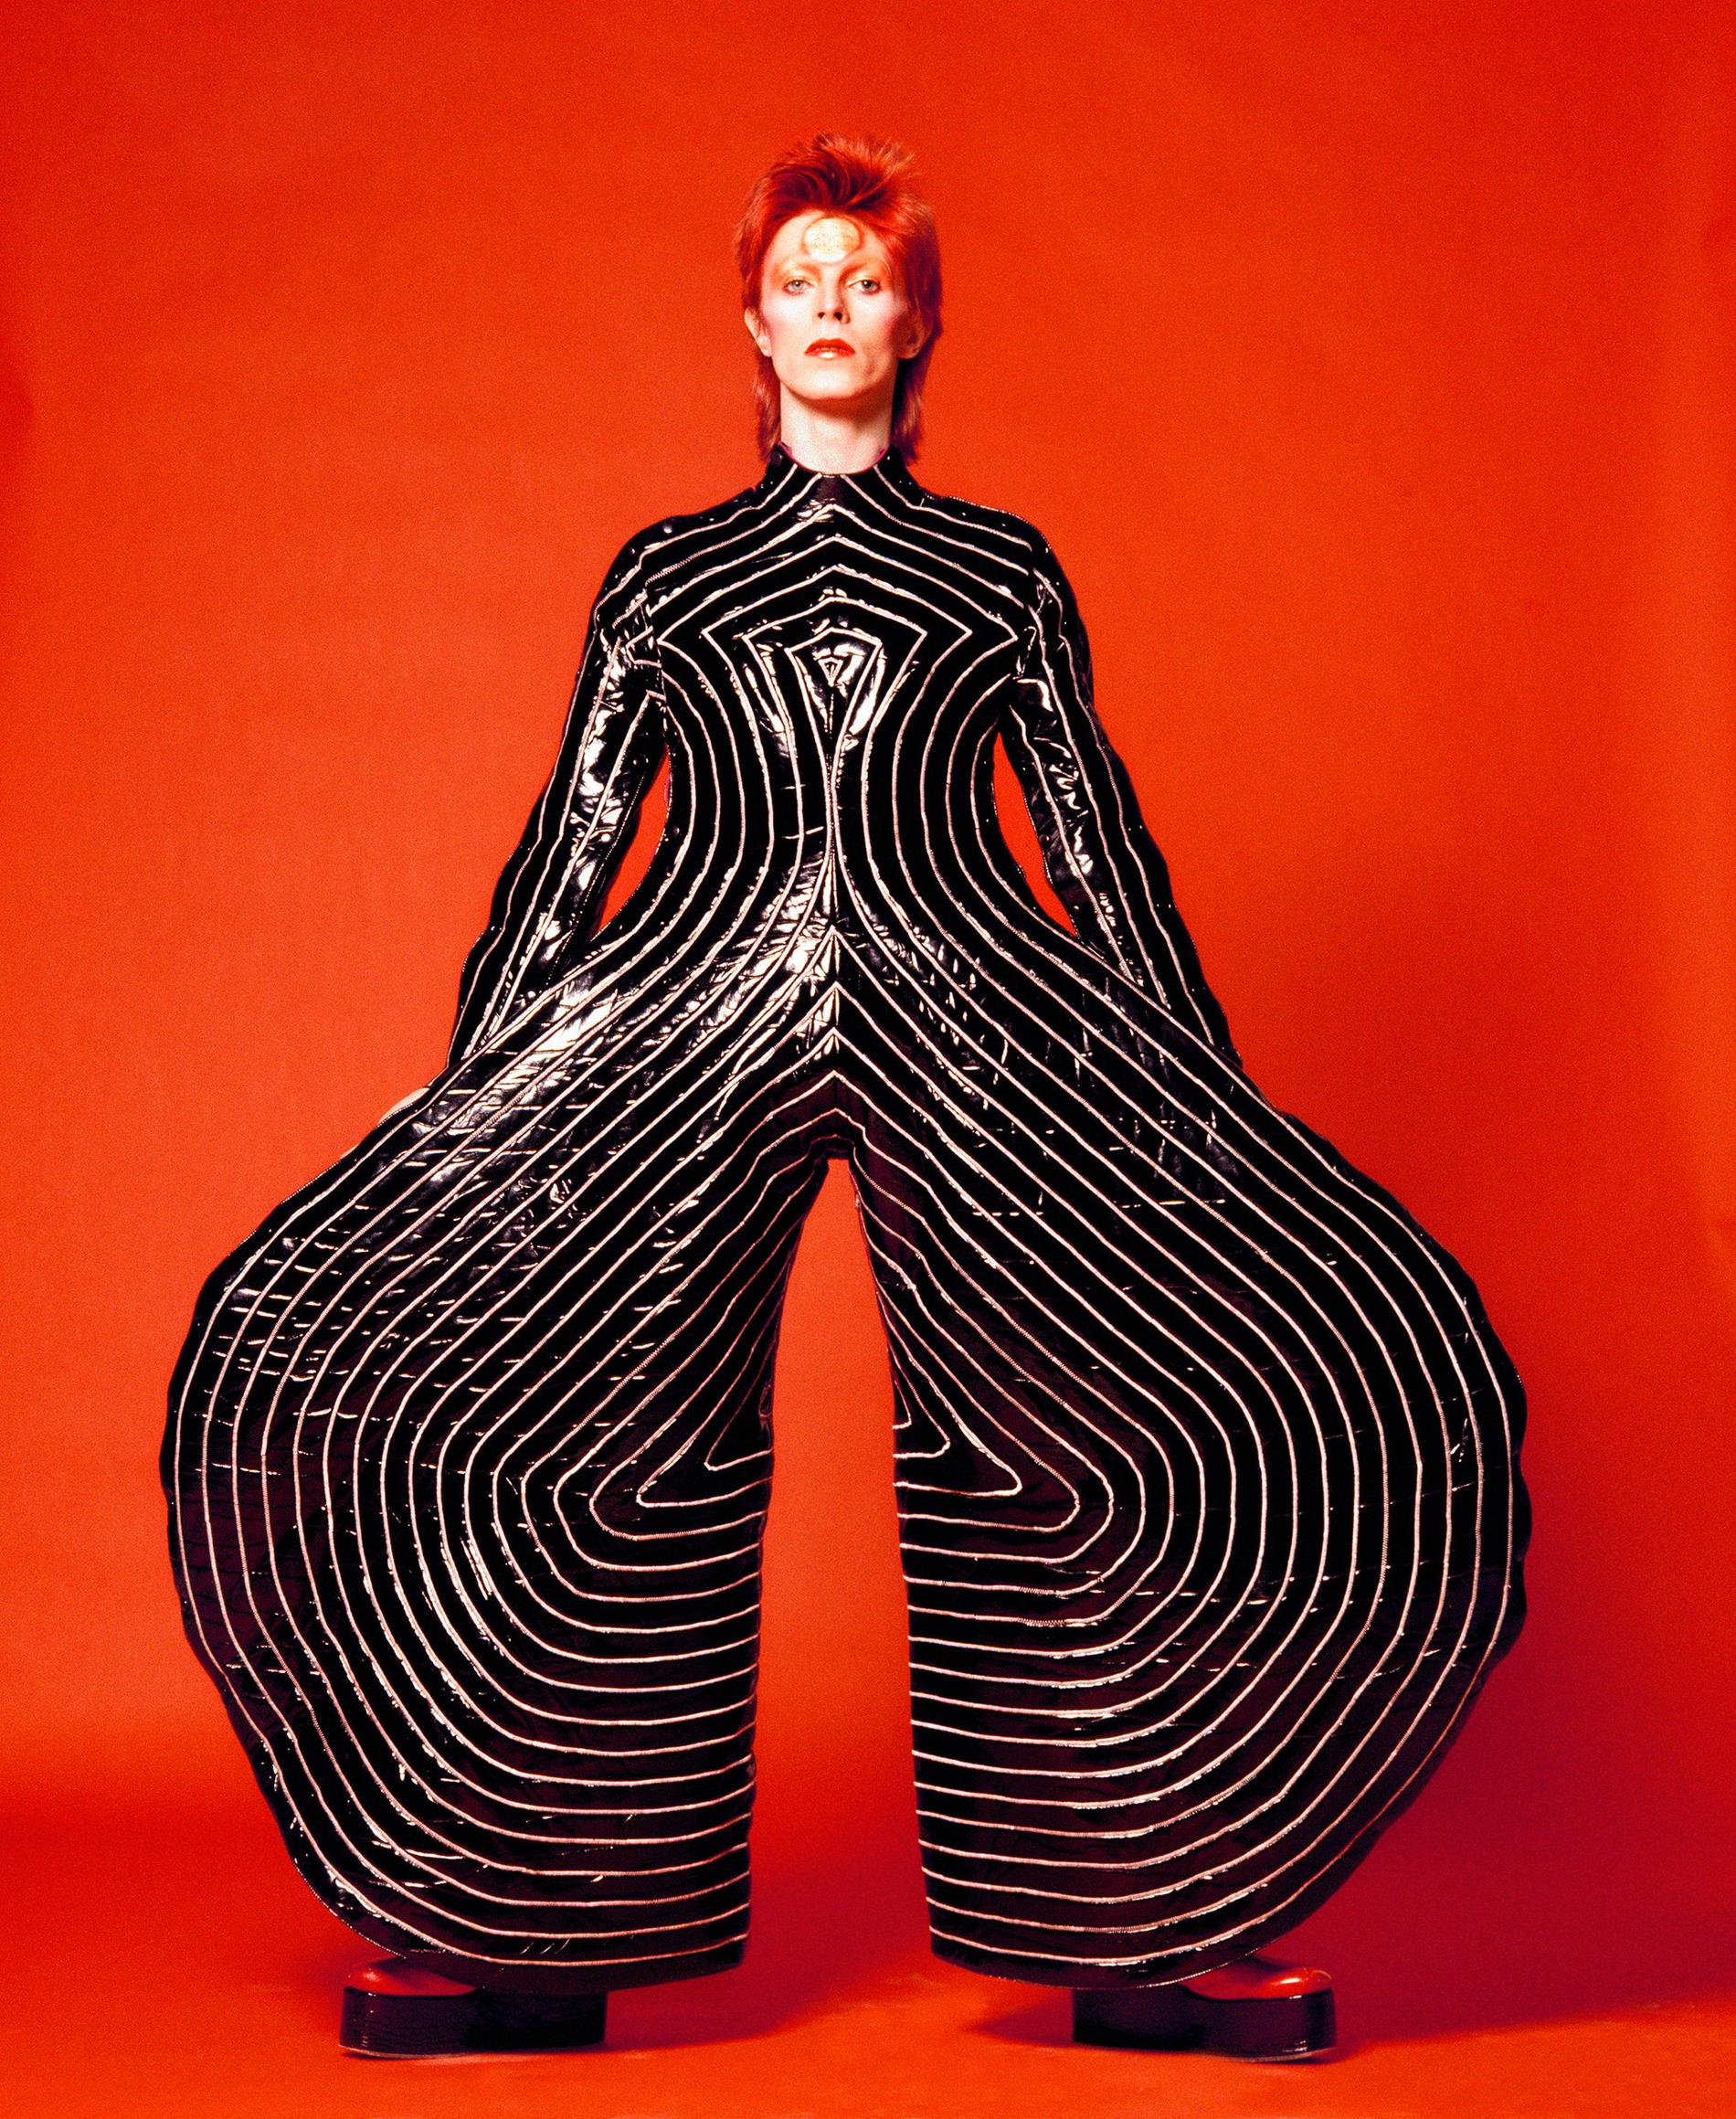 David Bowie skulle lansera Ziggy Stardust i New York där Masayoshi Sukita tog de ikoniska bilderna på den blivande världsstjärnan iklädd en kostym av den japanske designern Kansai Yamamoto. Pressbild.